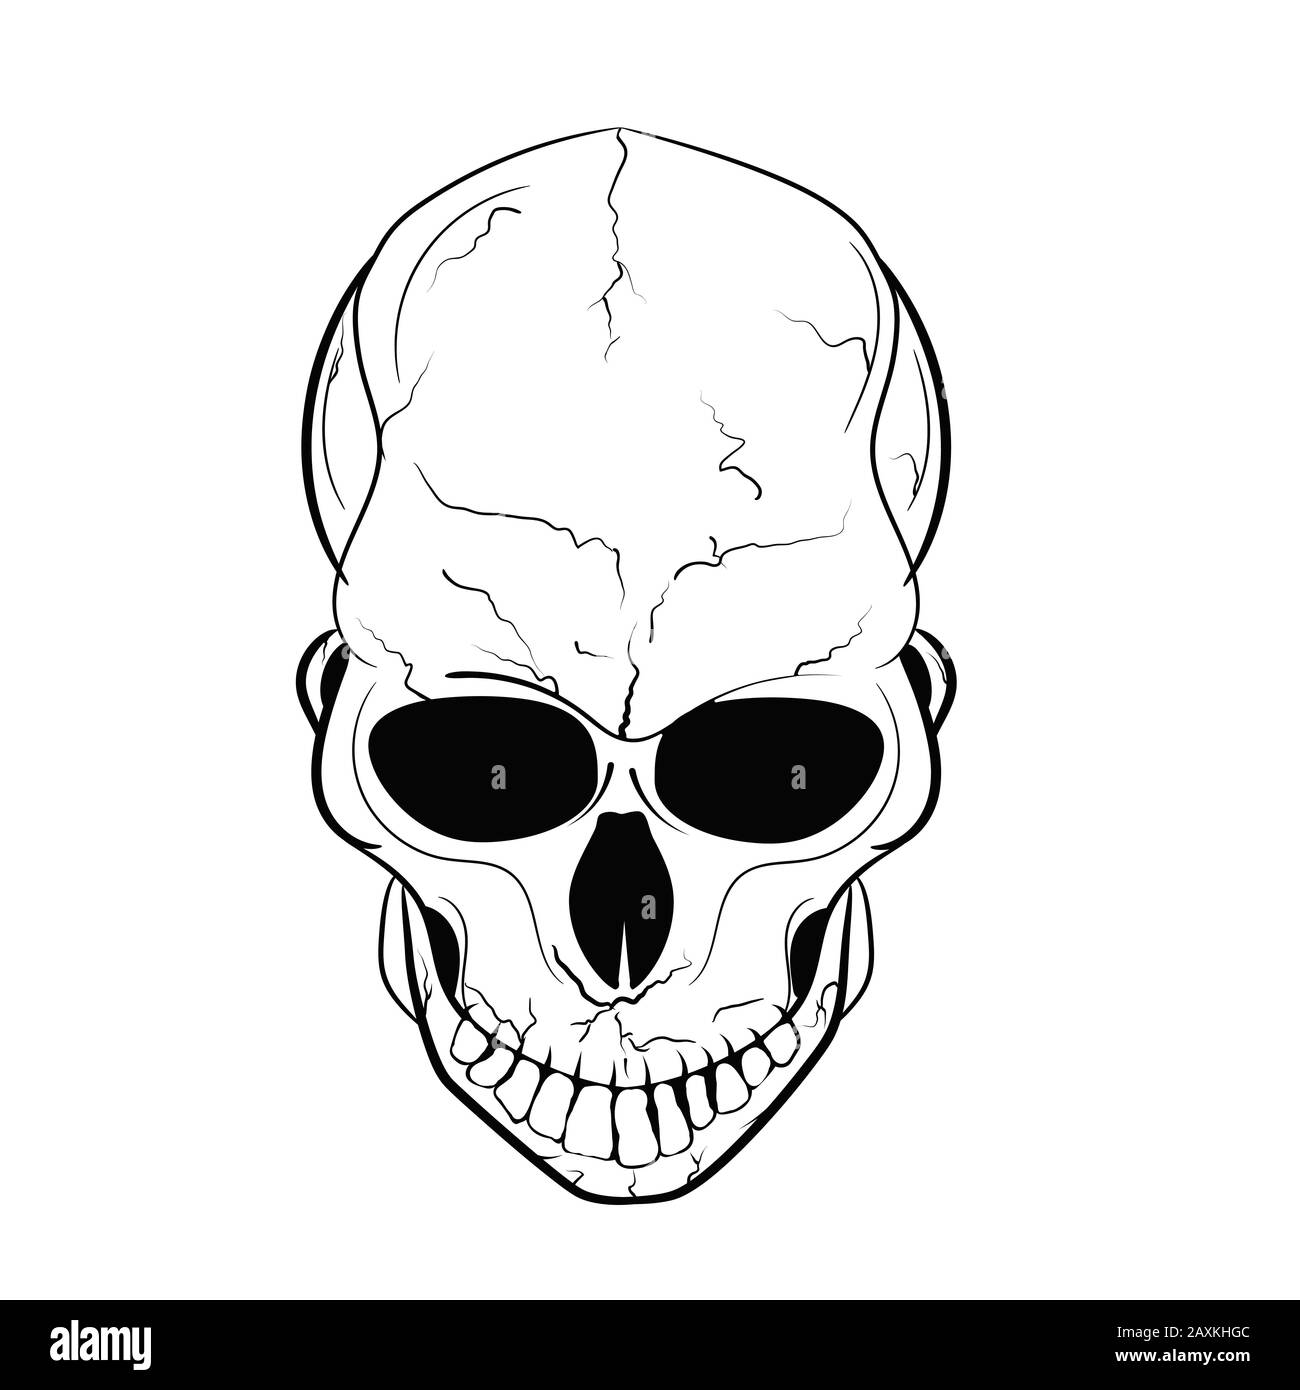 Crâne humain isolé sur fond blanc. Illustration vectorielle de silhouette pour la fête des pirates, Halloween, impression sur des chemises, cartes postales, tatouages Illustration de Vecteur